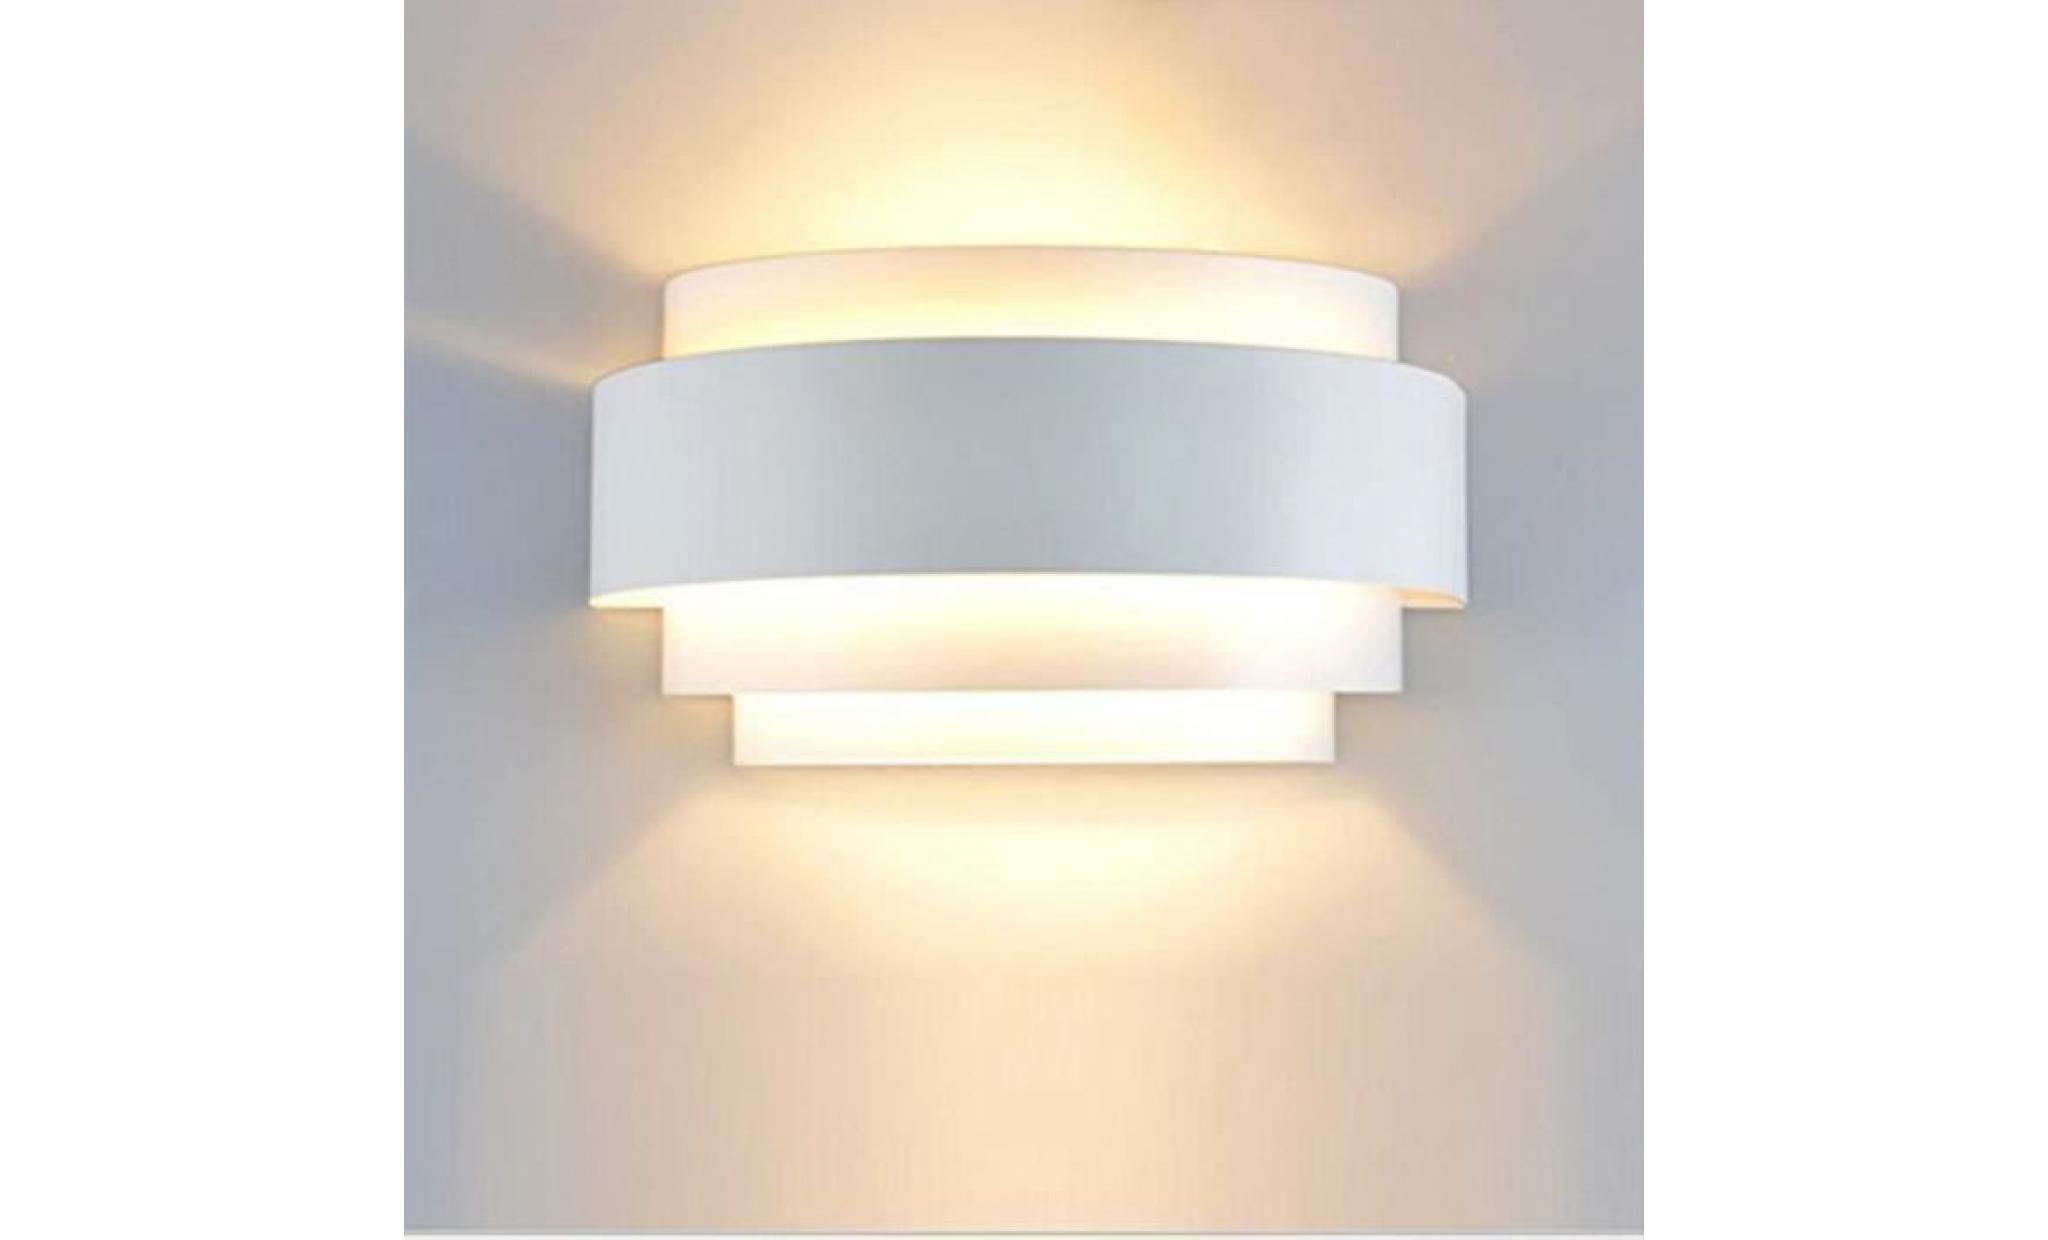 5w lampe murale ampoule e27 inclus eclairage décorative pour chambre escalier salon bureau(blanc chaud)